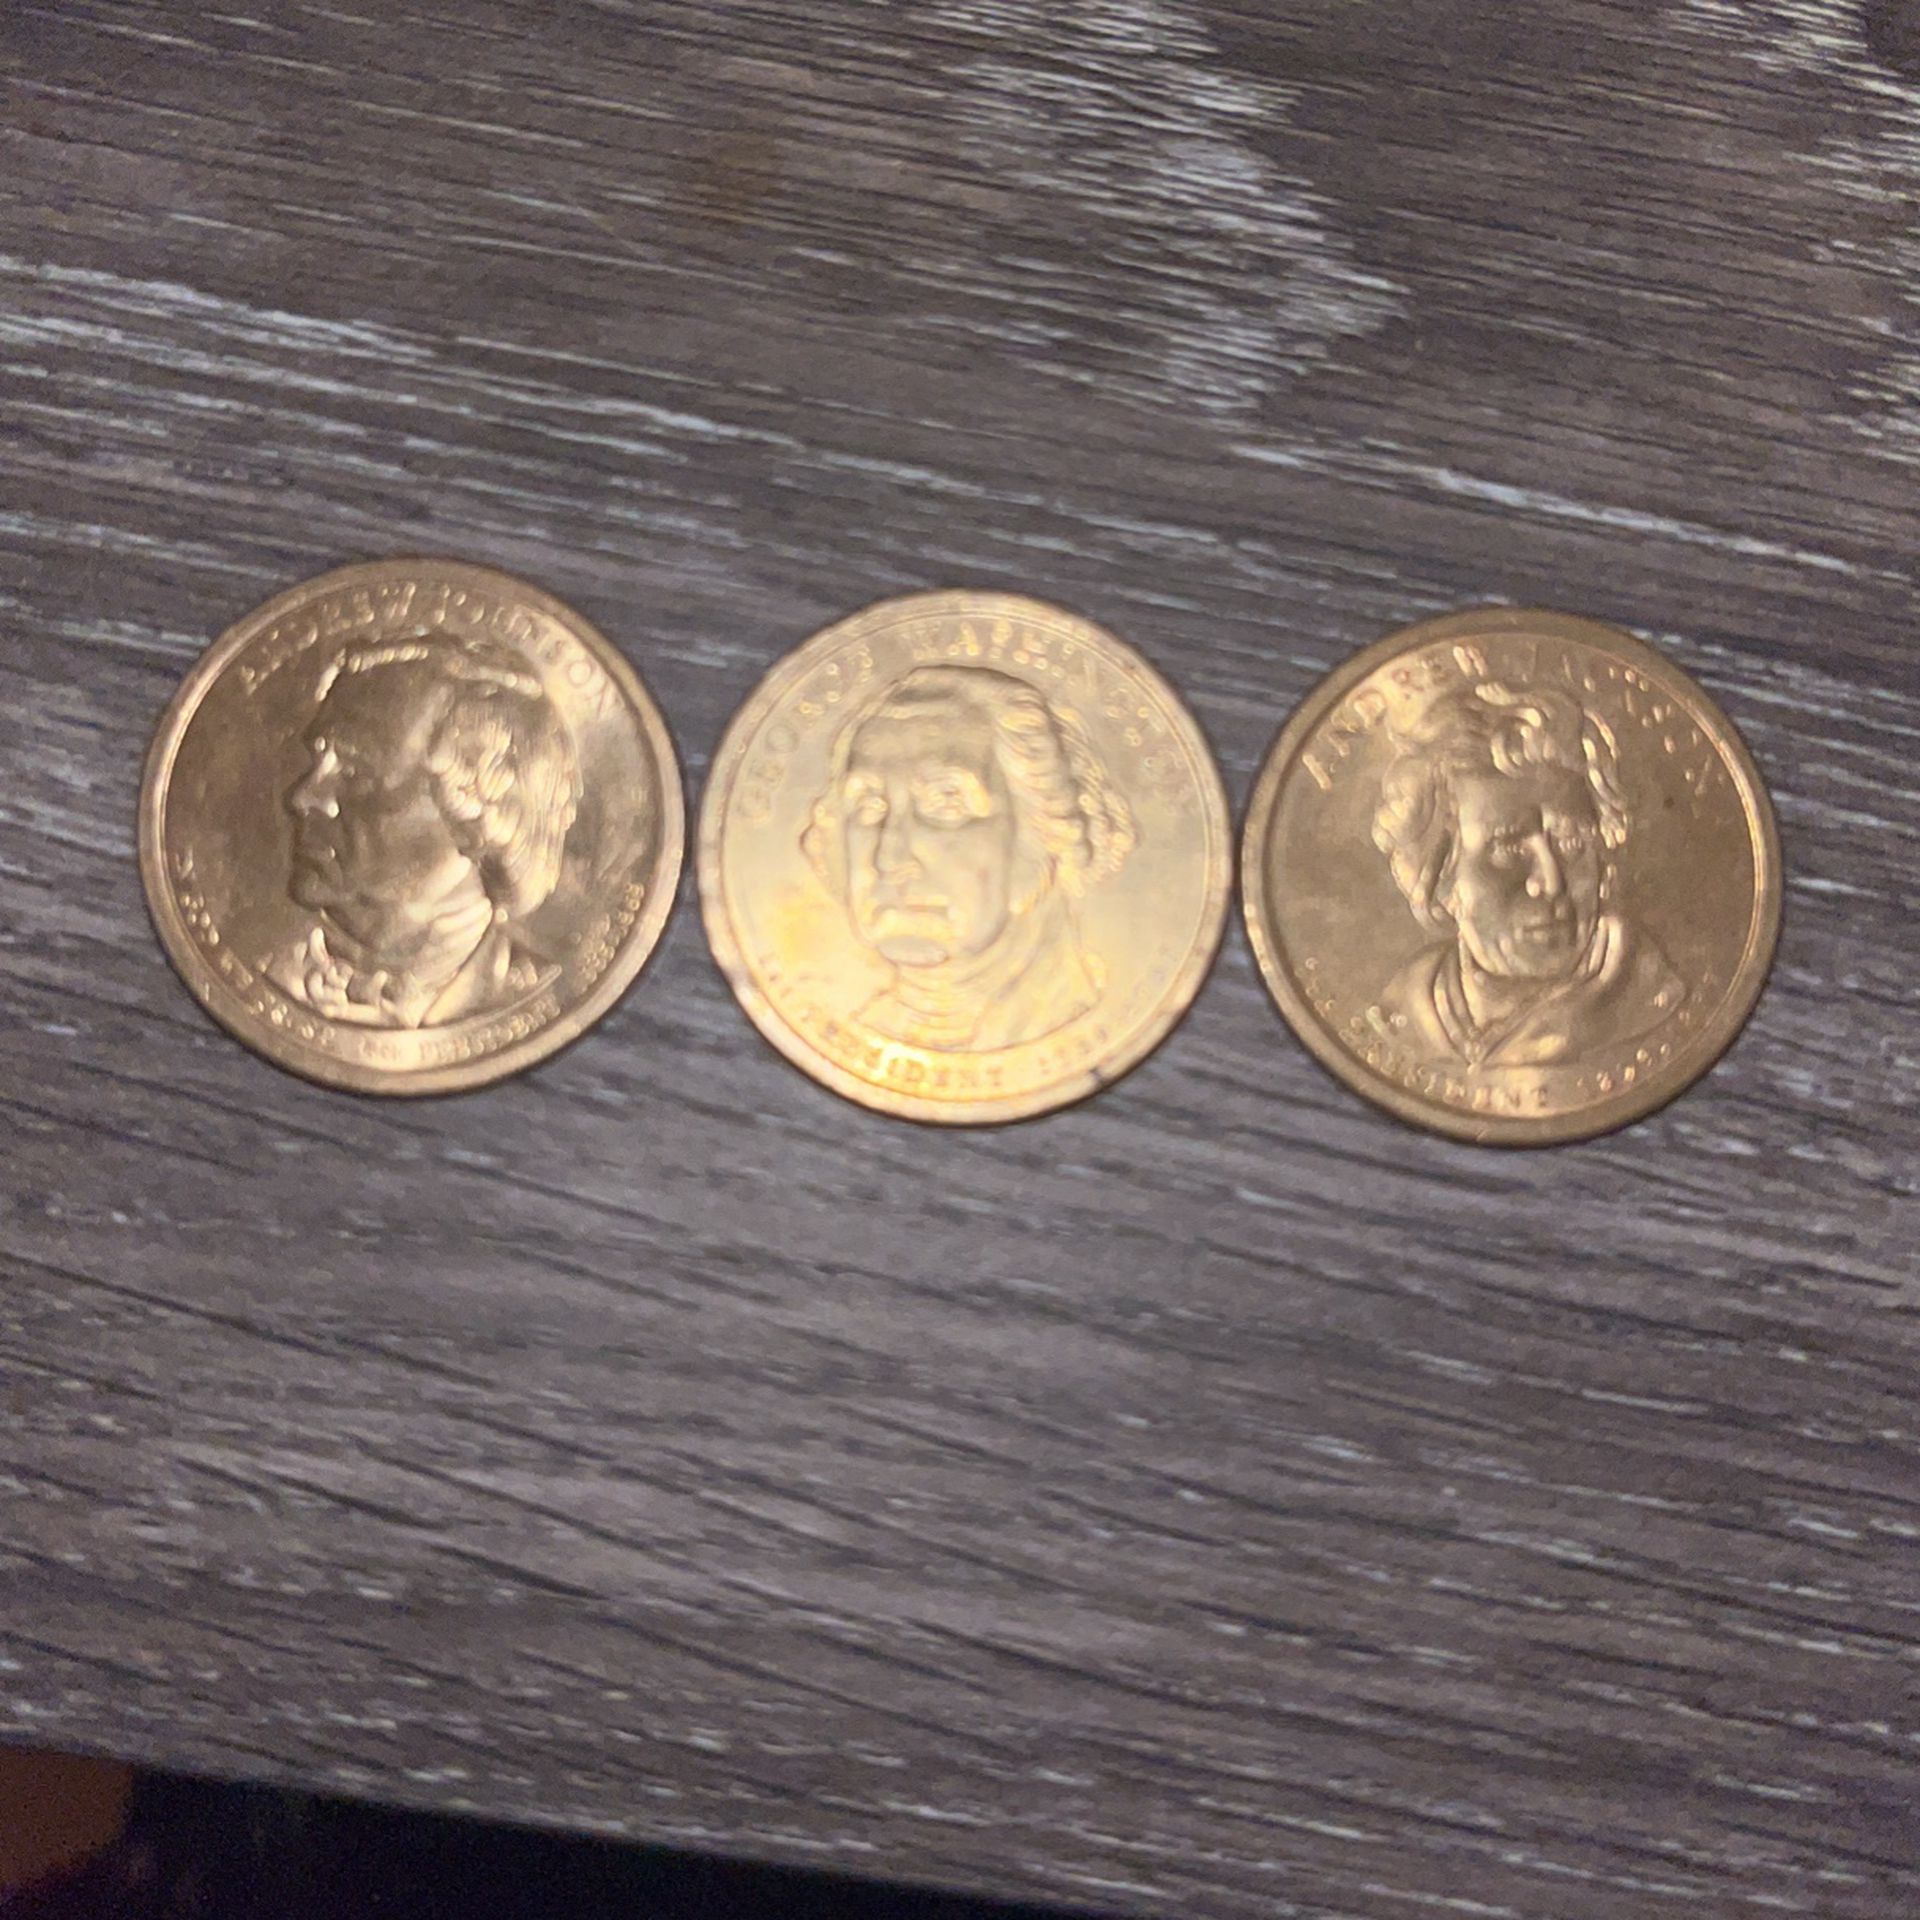 Rare $1 USA Coins